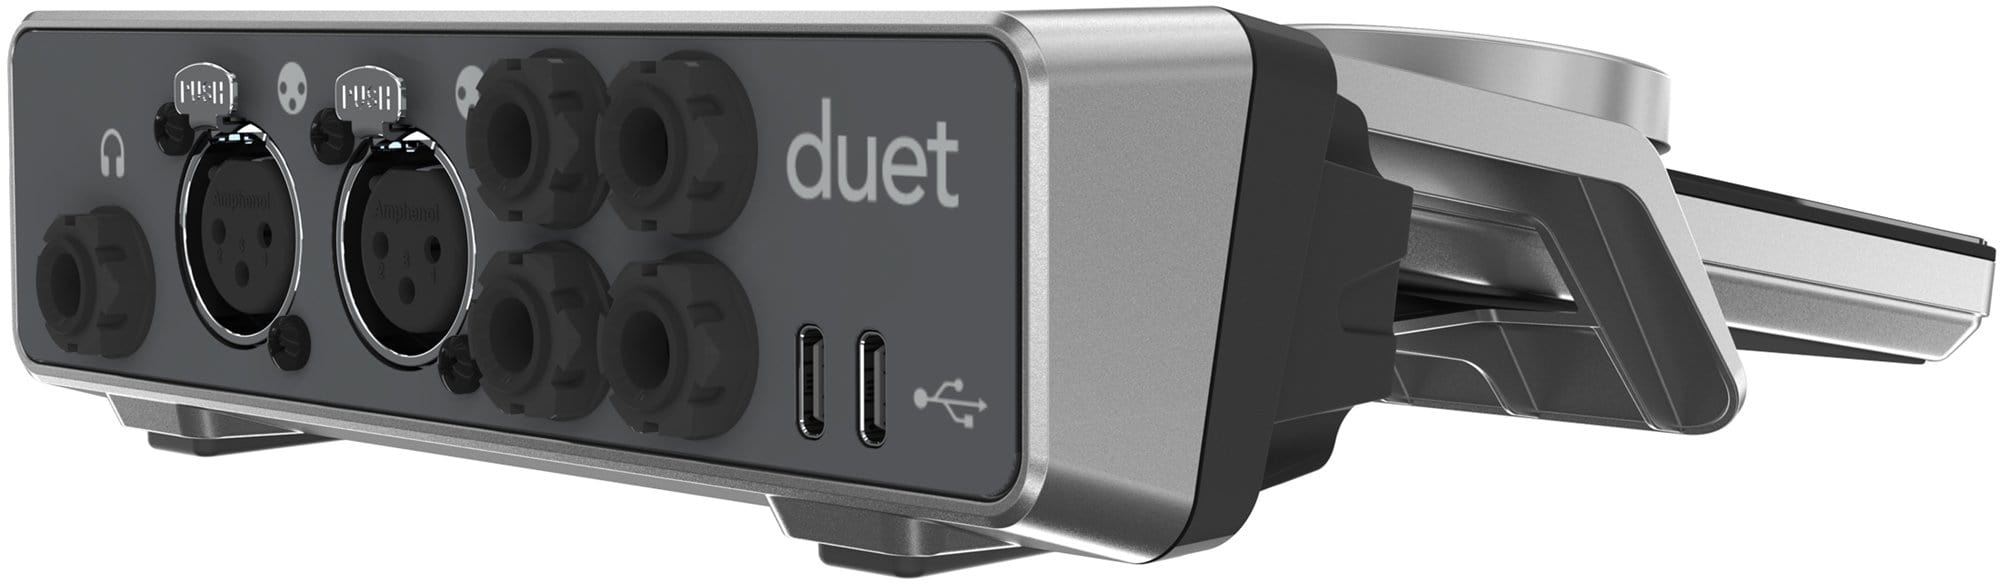 Apogee Duet Dock for Duet 3 Audio Interface | Solotech